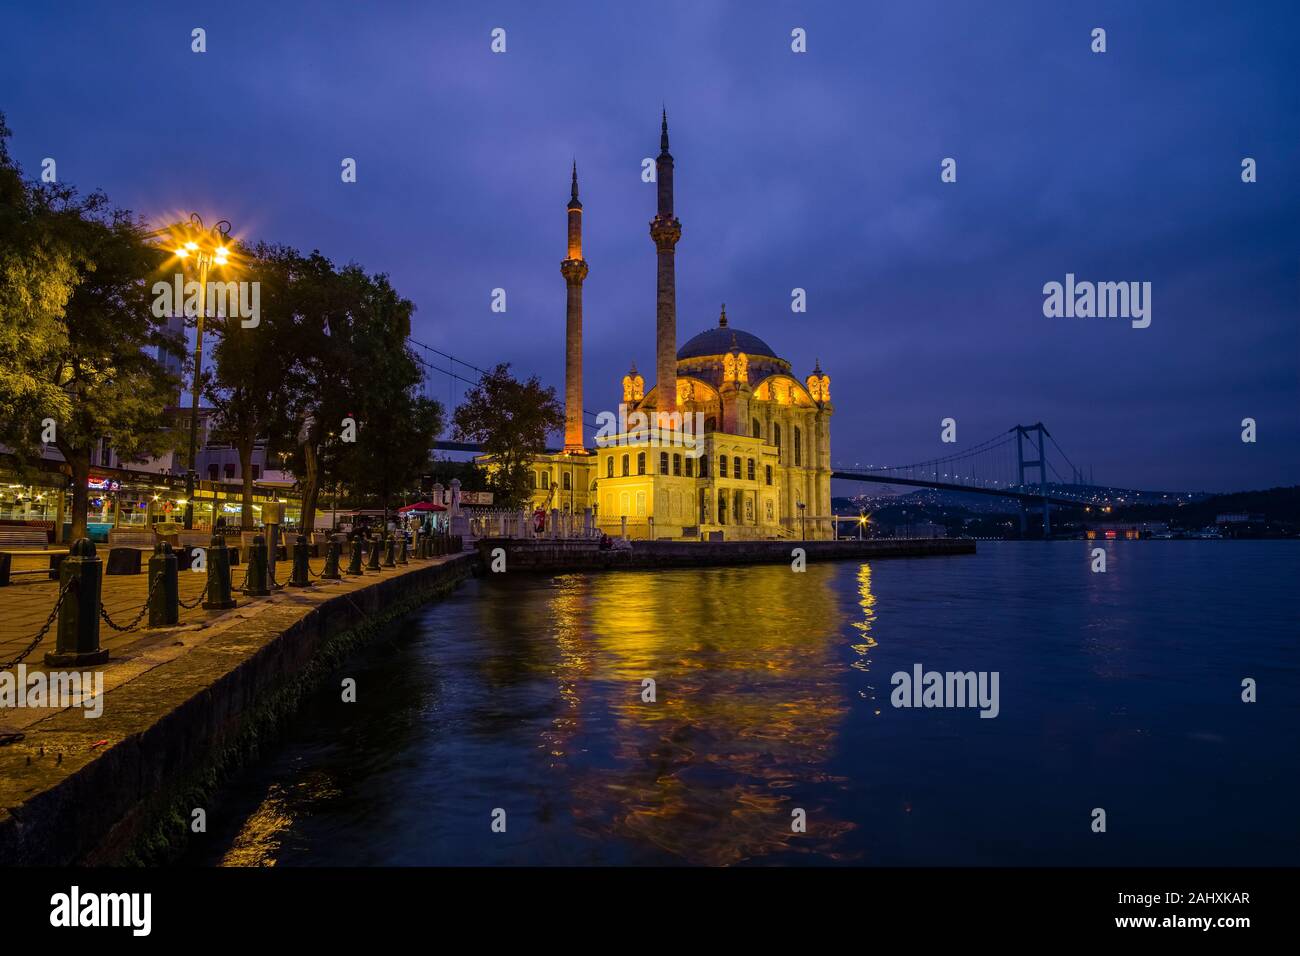 La moschea di Ortaköy, Ortaköy Camii, situato sul Bosforo, il confine continentale tra Europa e Asia, illuminata di mattina presto Foto Stock